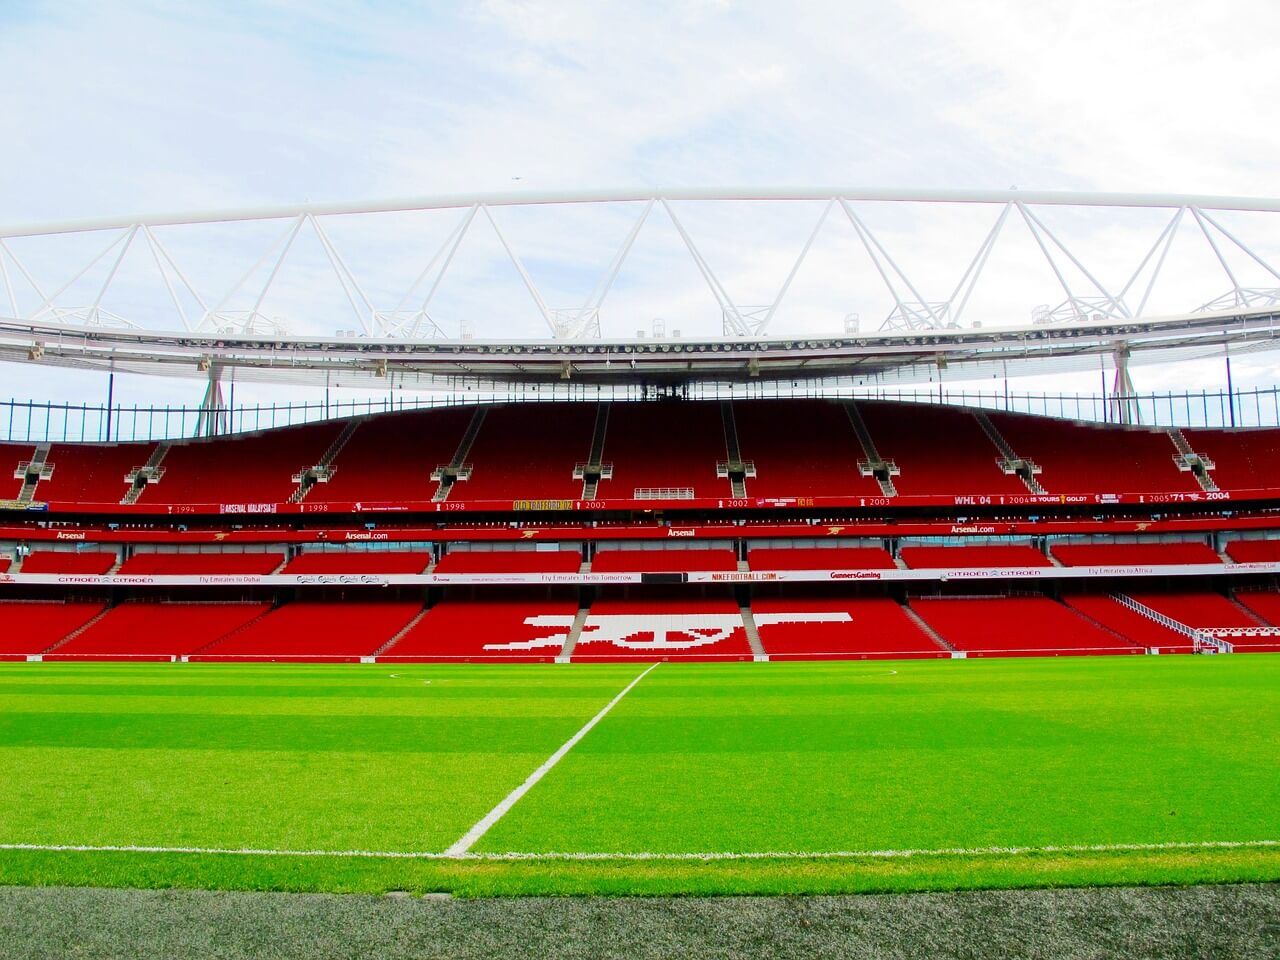 Emirates Stadium – London, England